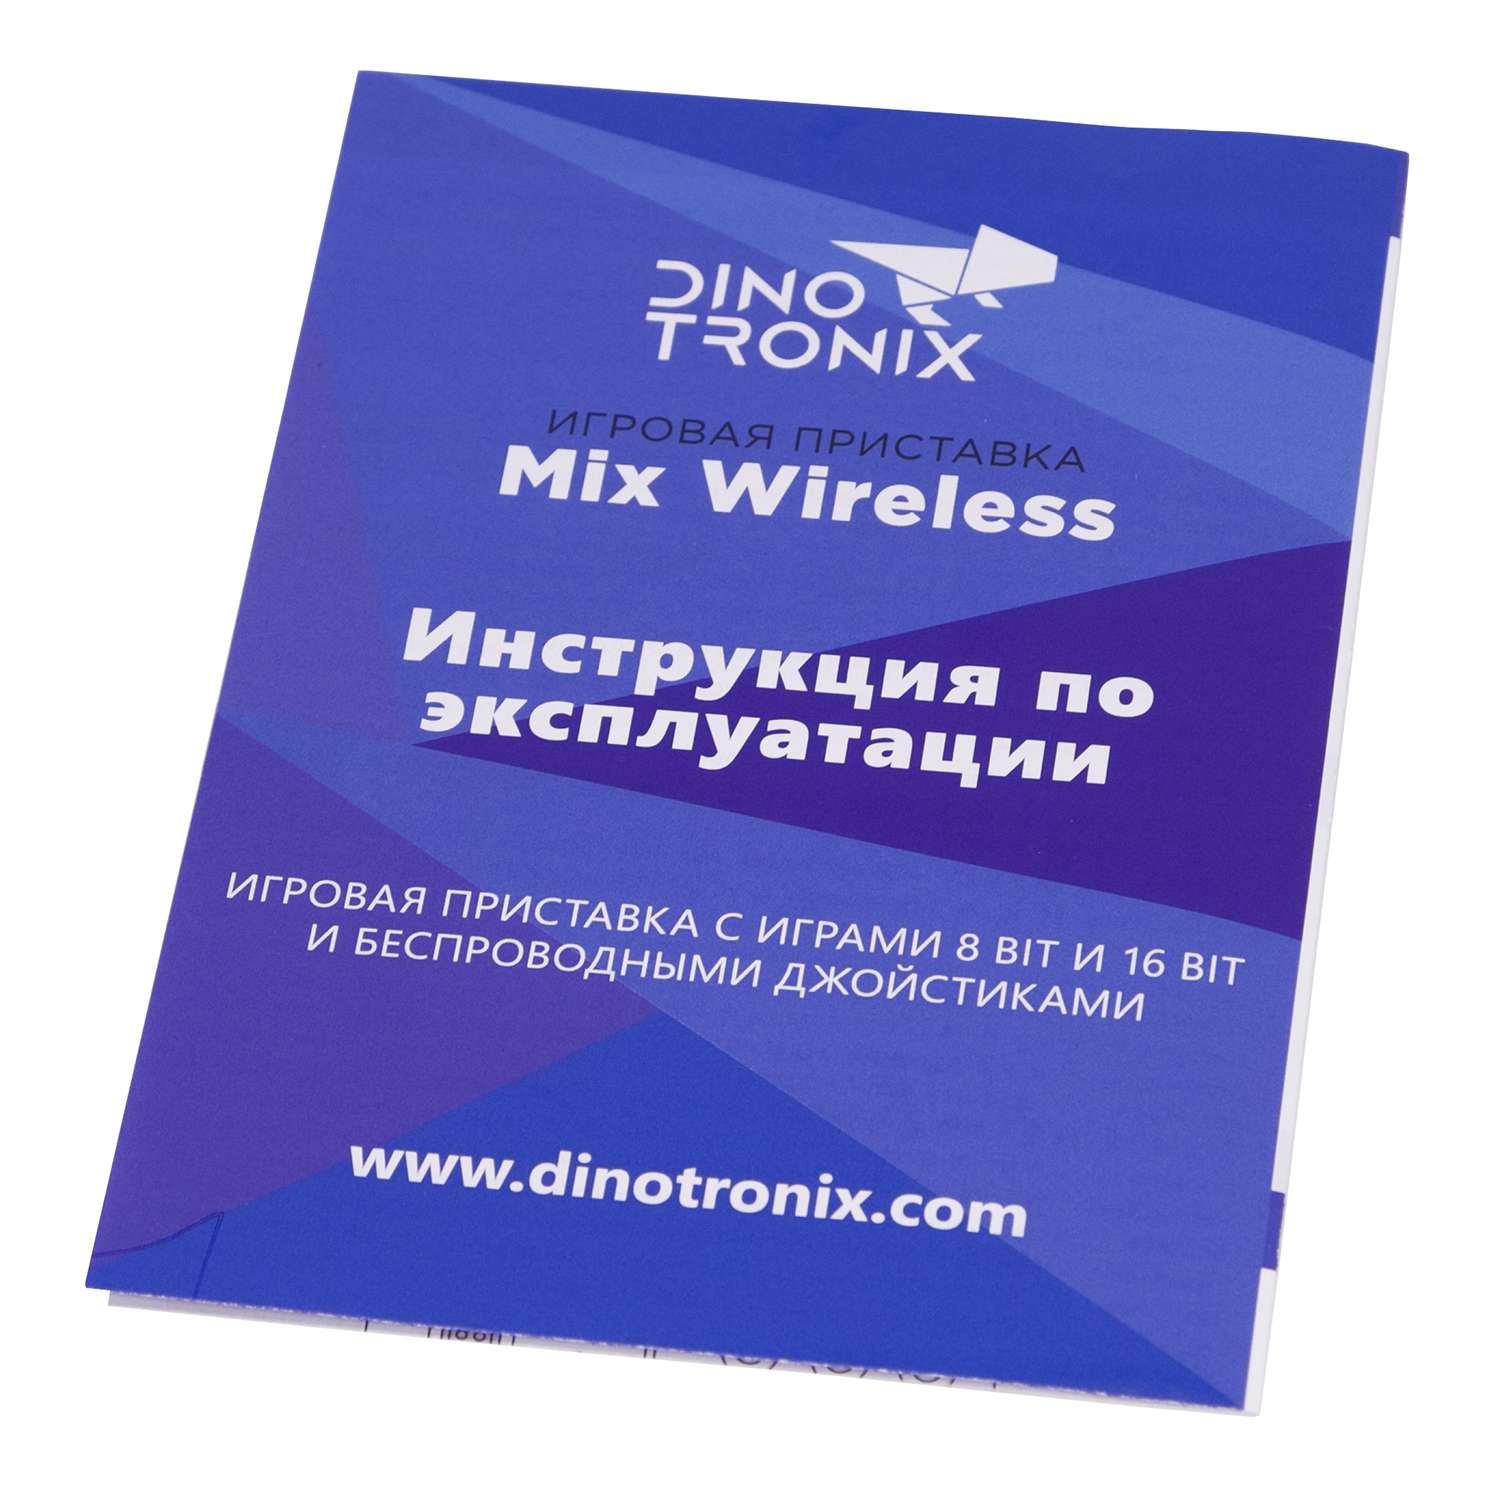 Игровая приставка для детей Retro Genesis Dinotronix Mix Wireless + 470 игр AV 2 беспроводных джойстика - фото 14